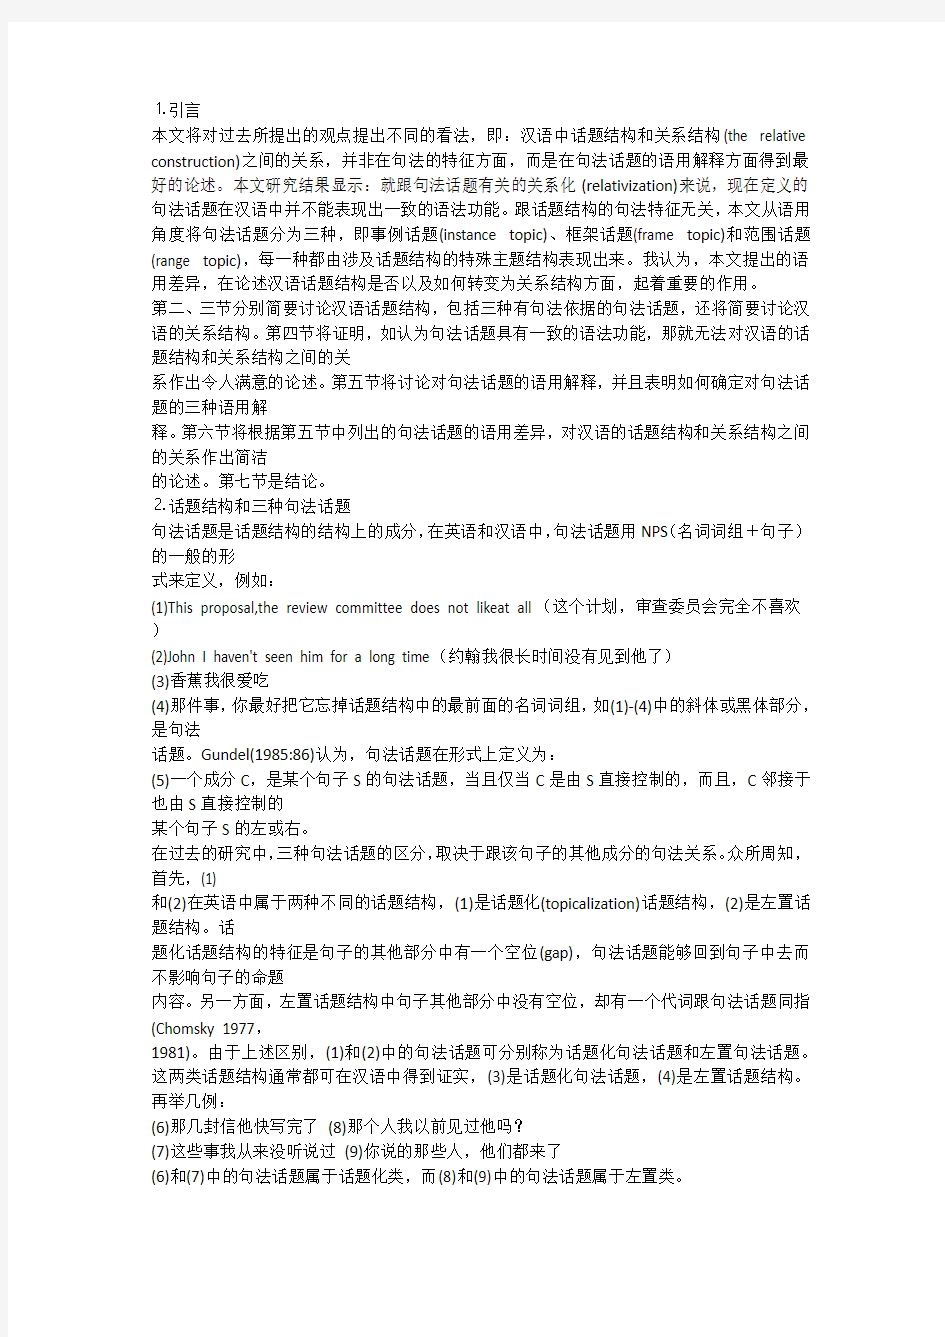 肖临骏：汉语中结构话题的语用解释和关系化